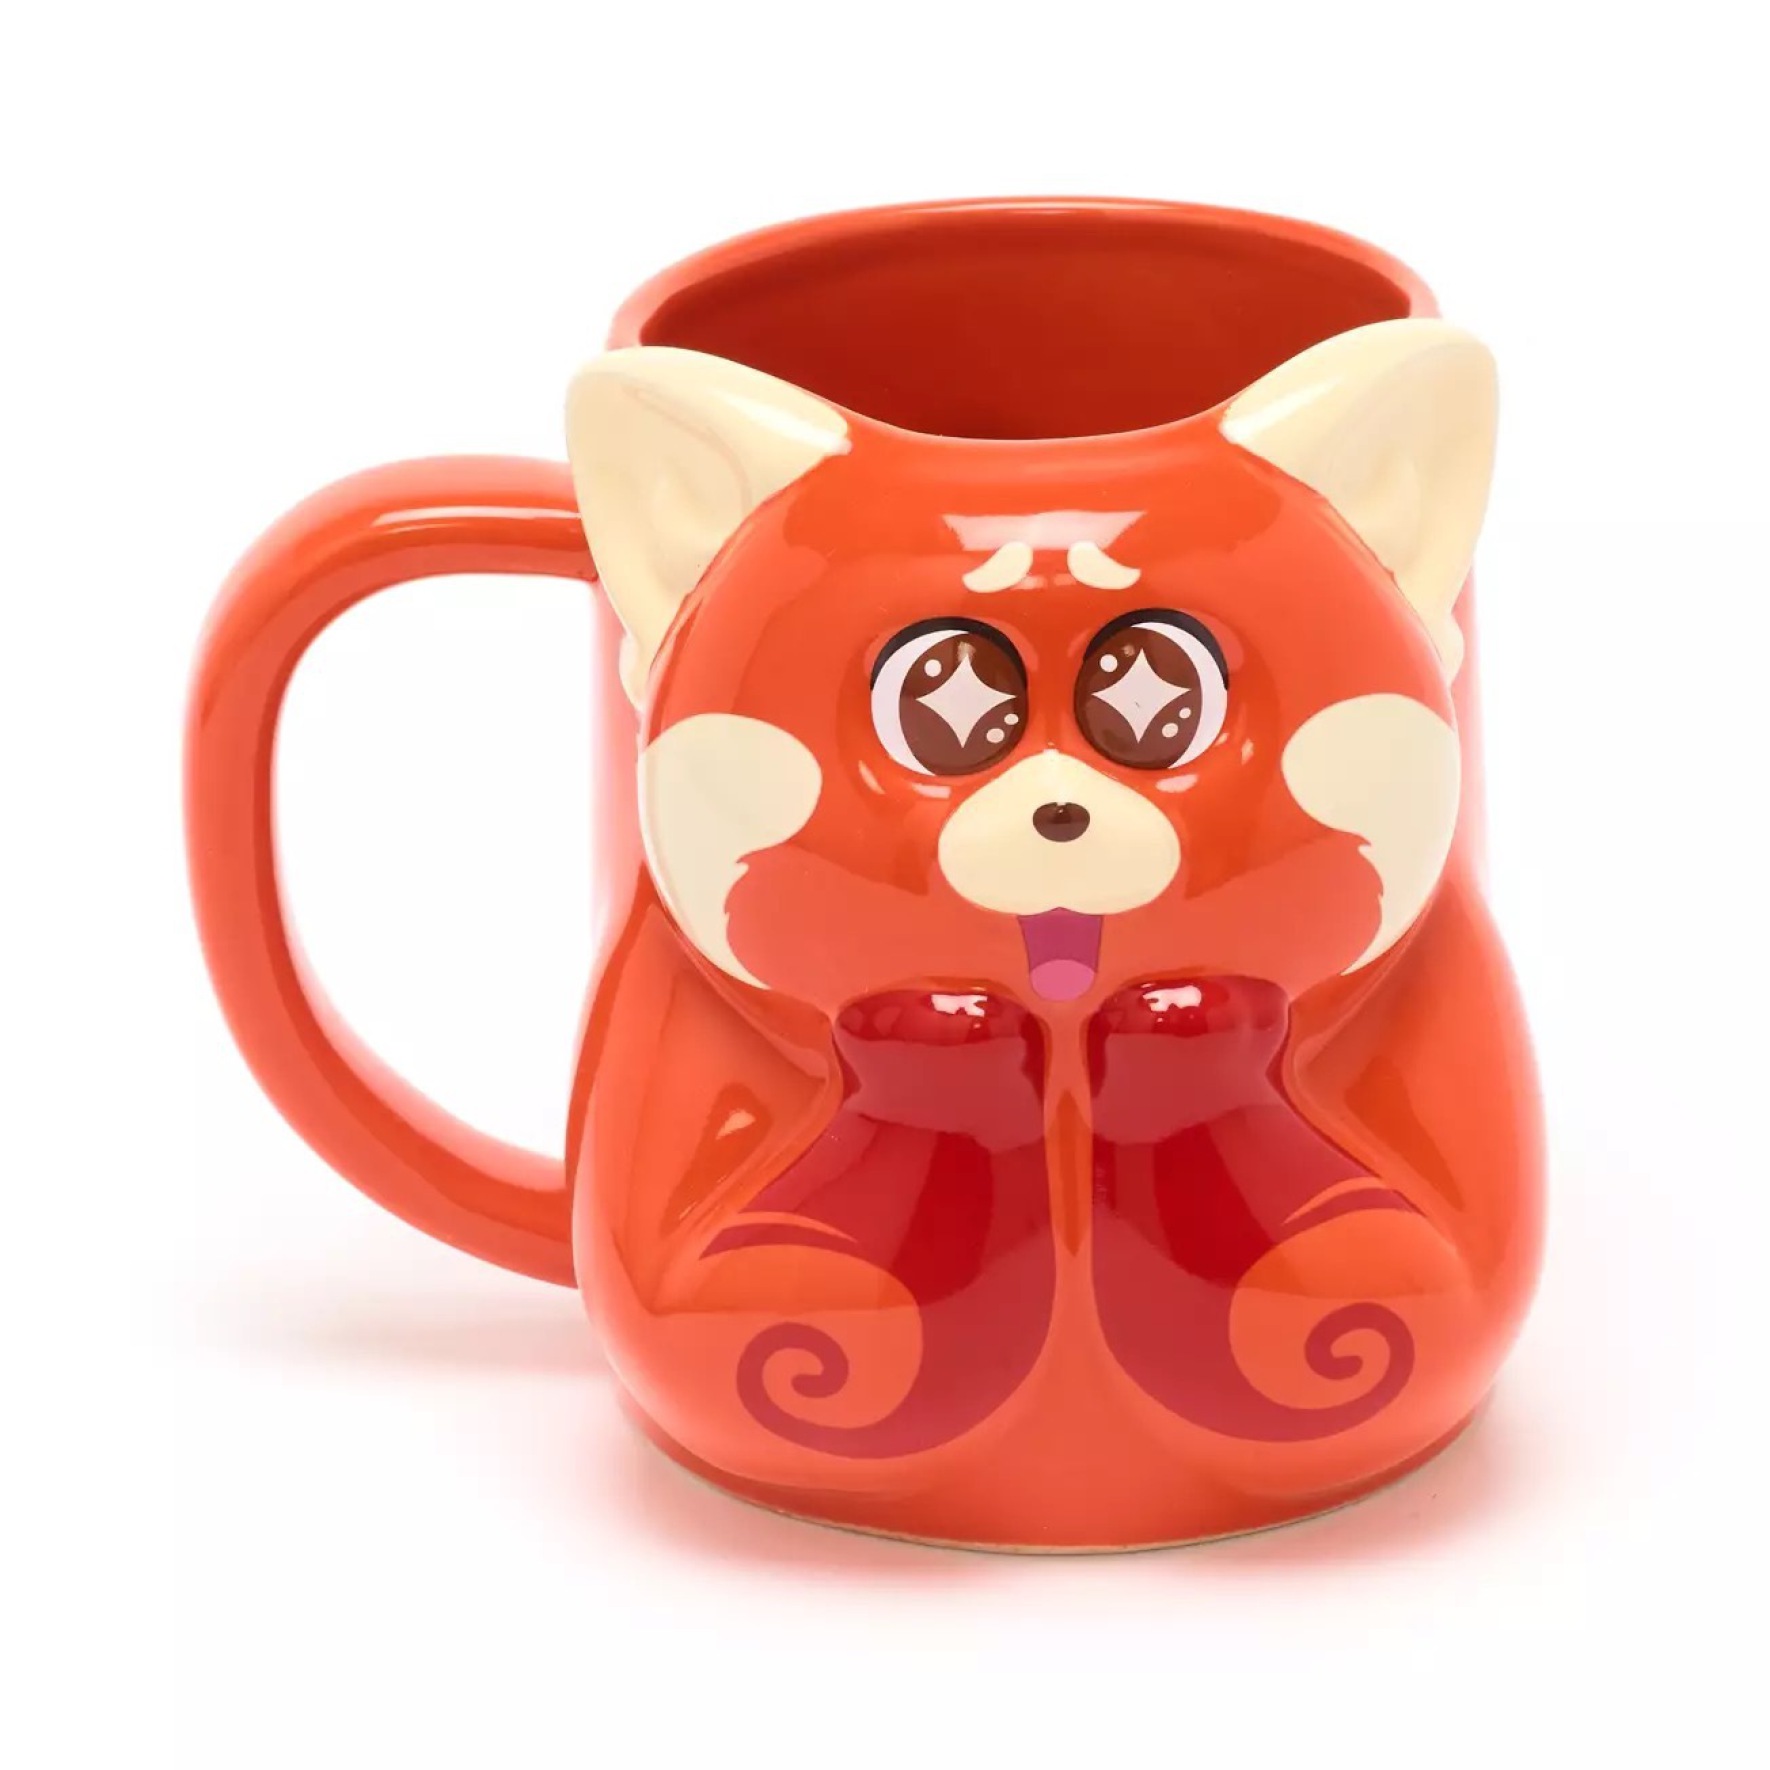  ماگ Mei Lee red panda shaped mug, Red, Disney Store 